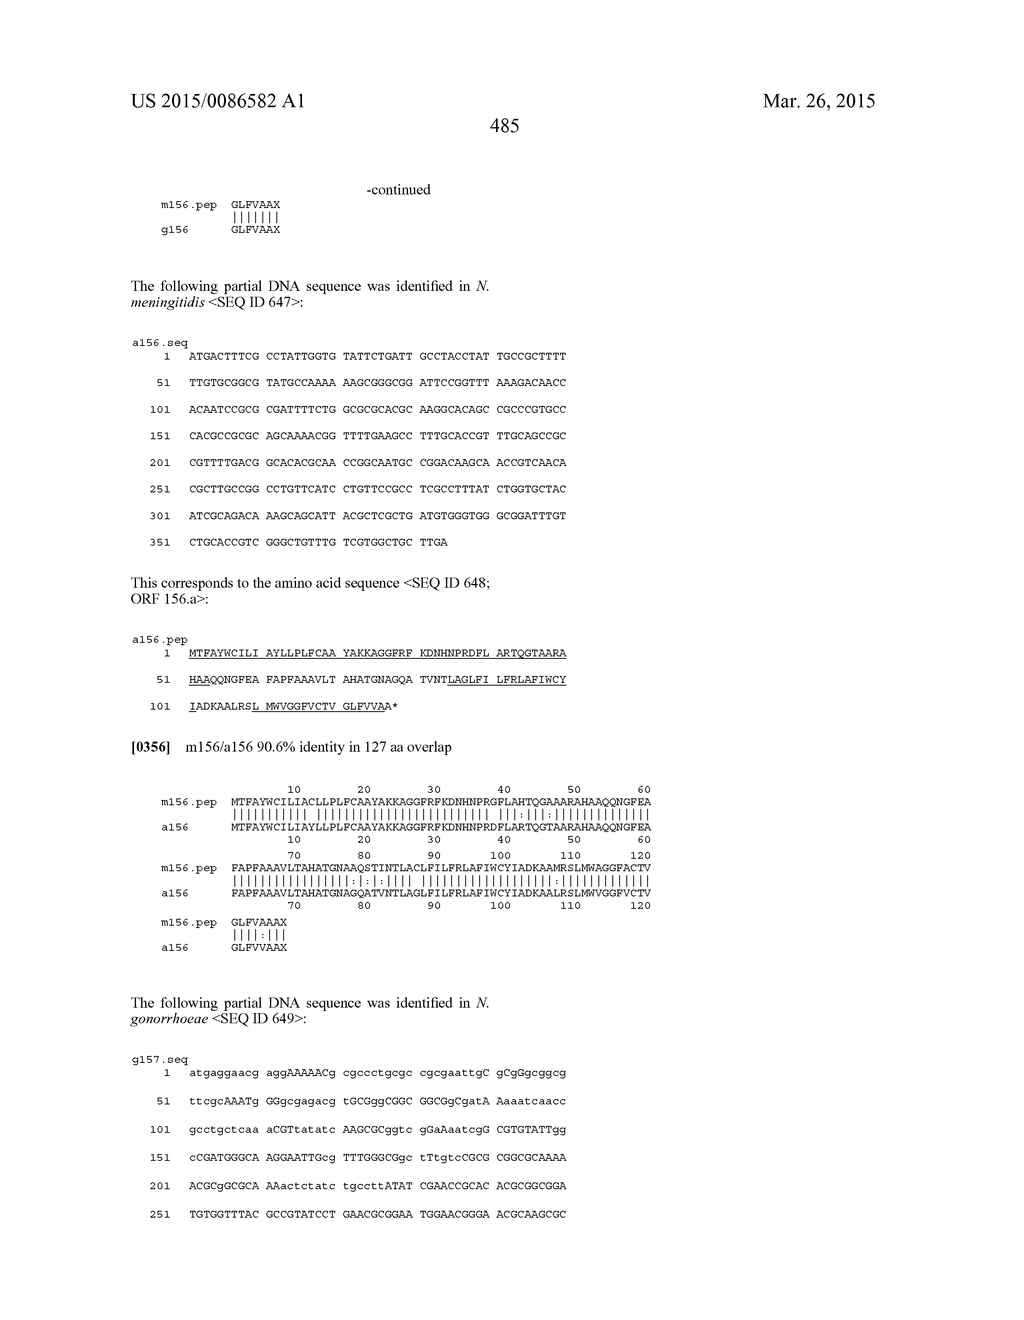 NEISSERIA MENINGITIDIS ANTIGENS AND COMPOSITIONS - diagram, schematic, and image 517